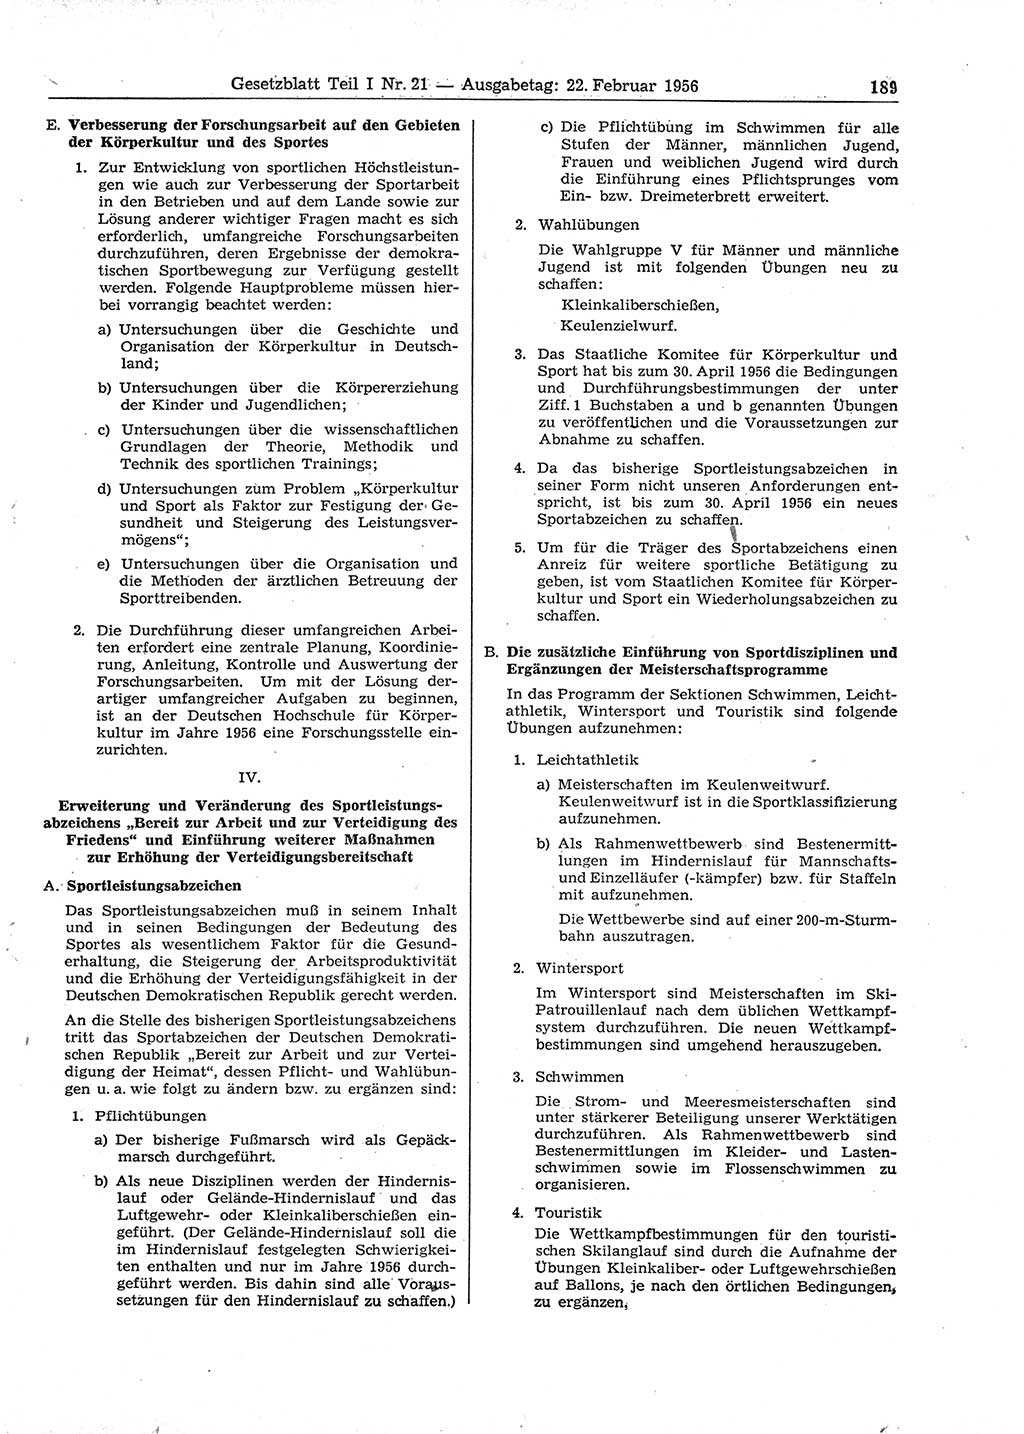 Gesetzblatt (GBl.) der Deutschen Demokratischen Republik (DDR) Teil Ⅰ 1956, Seite 189 (GBl. DDR Ⅰ 1956, S. 189)